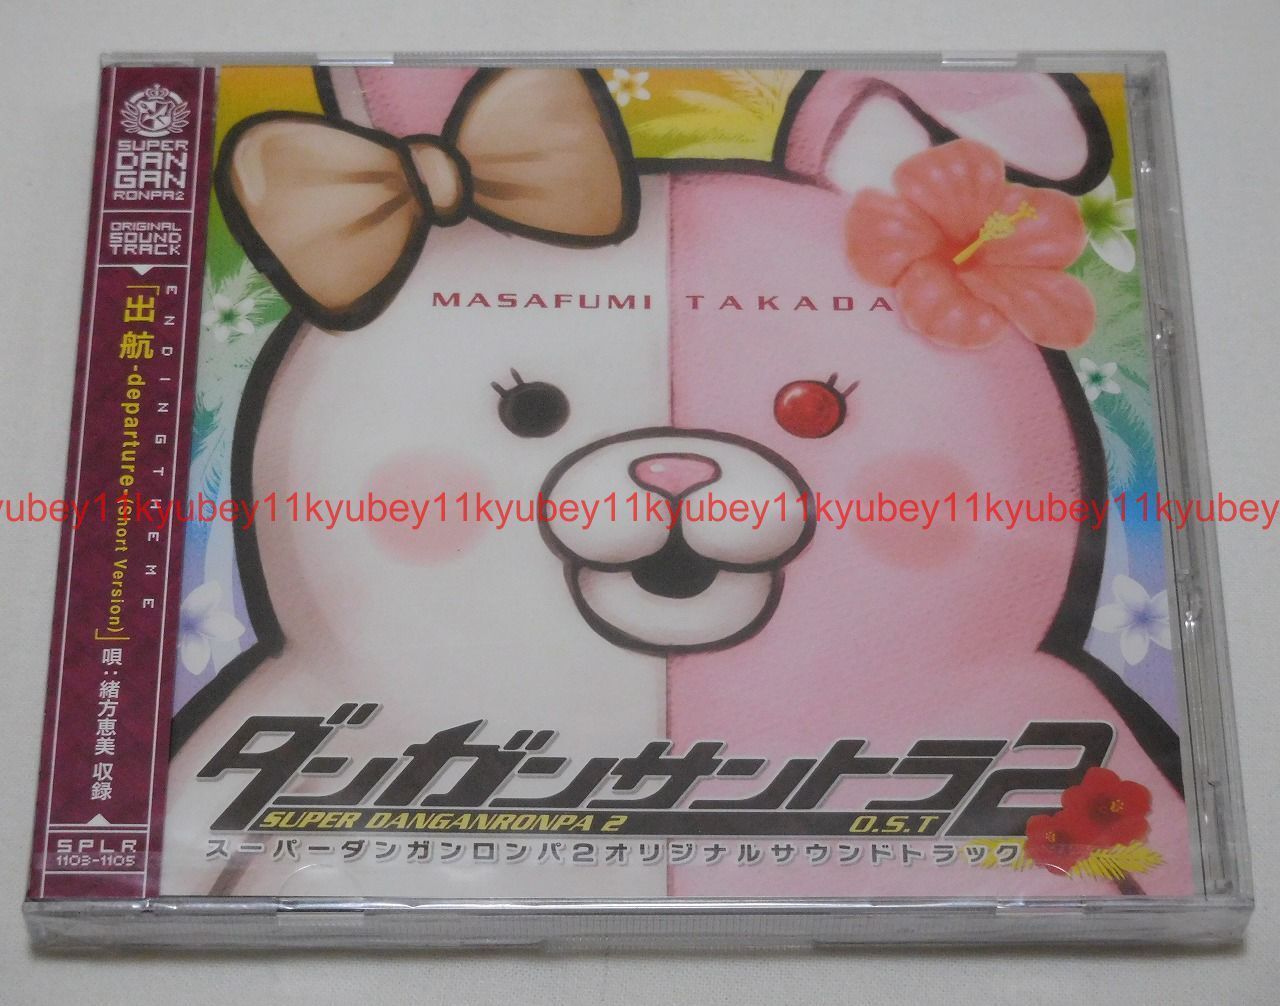 New Super Danganronpa Dangan Ronpa 2 Original Soundtrack 3 CD Japan SPLR-1103